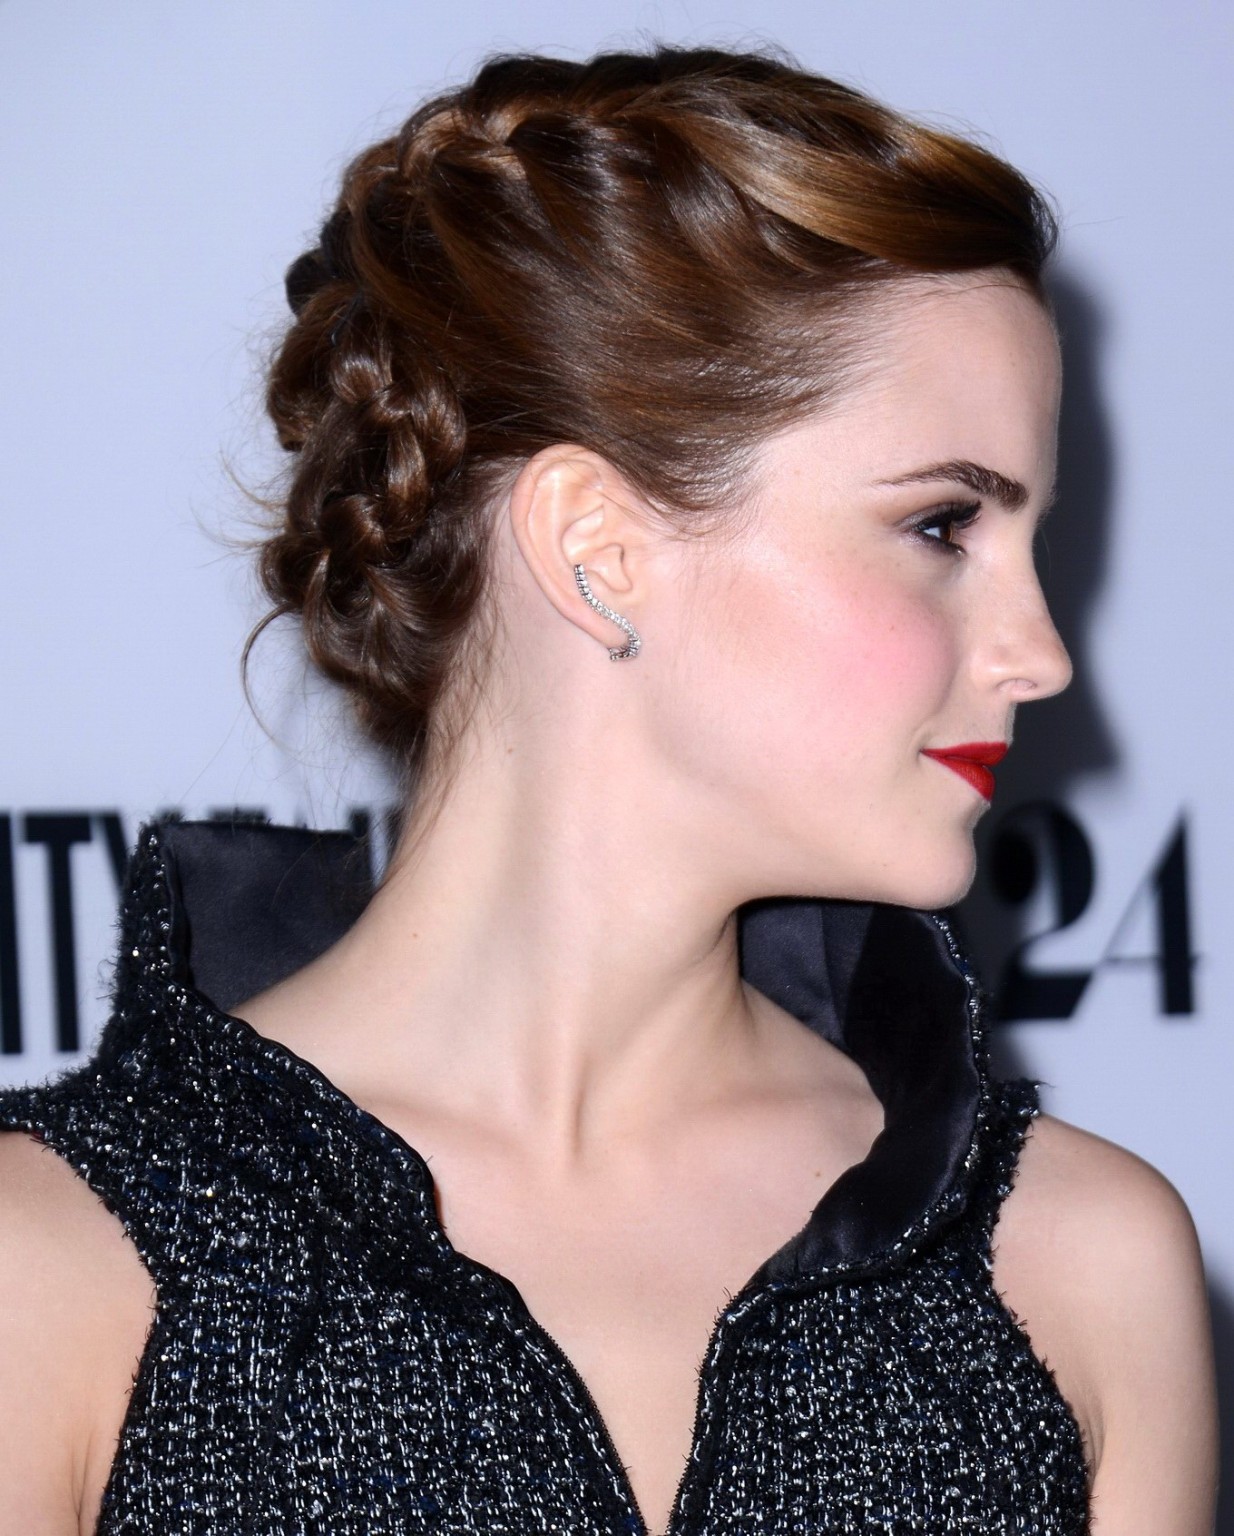 Emma Watson leggy wearing a mini dress at 'The Bling Ring' premiere in LA #75229943